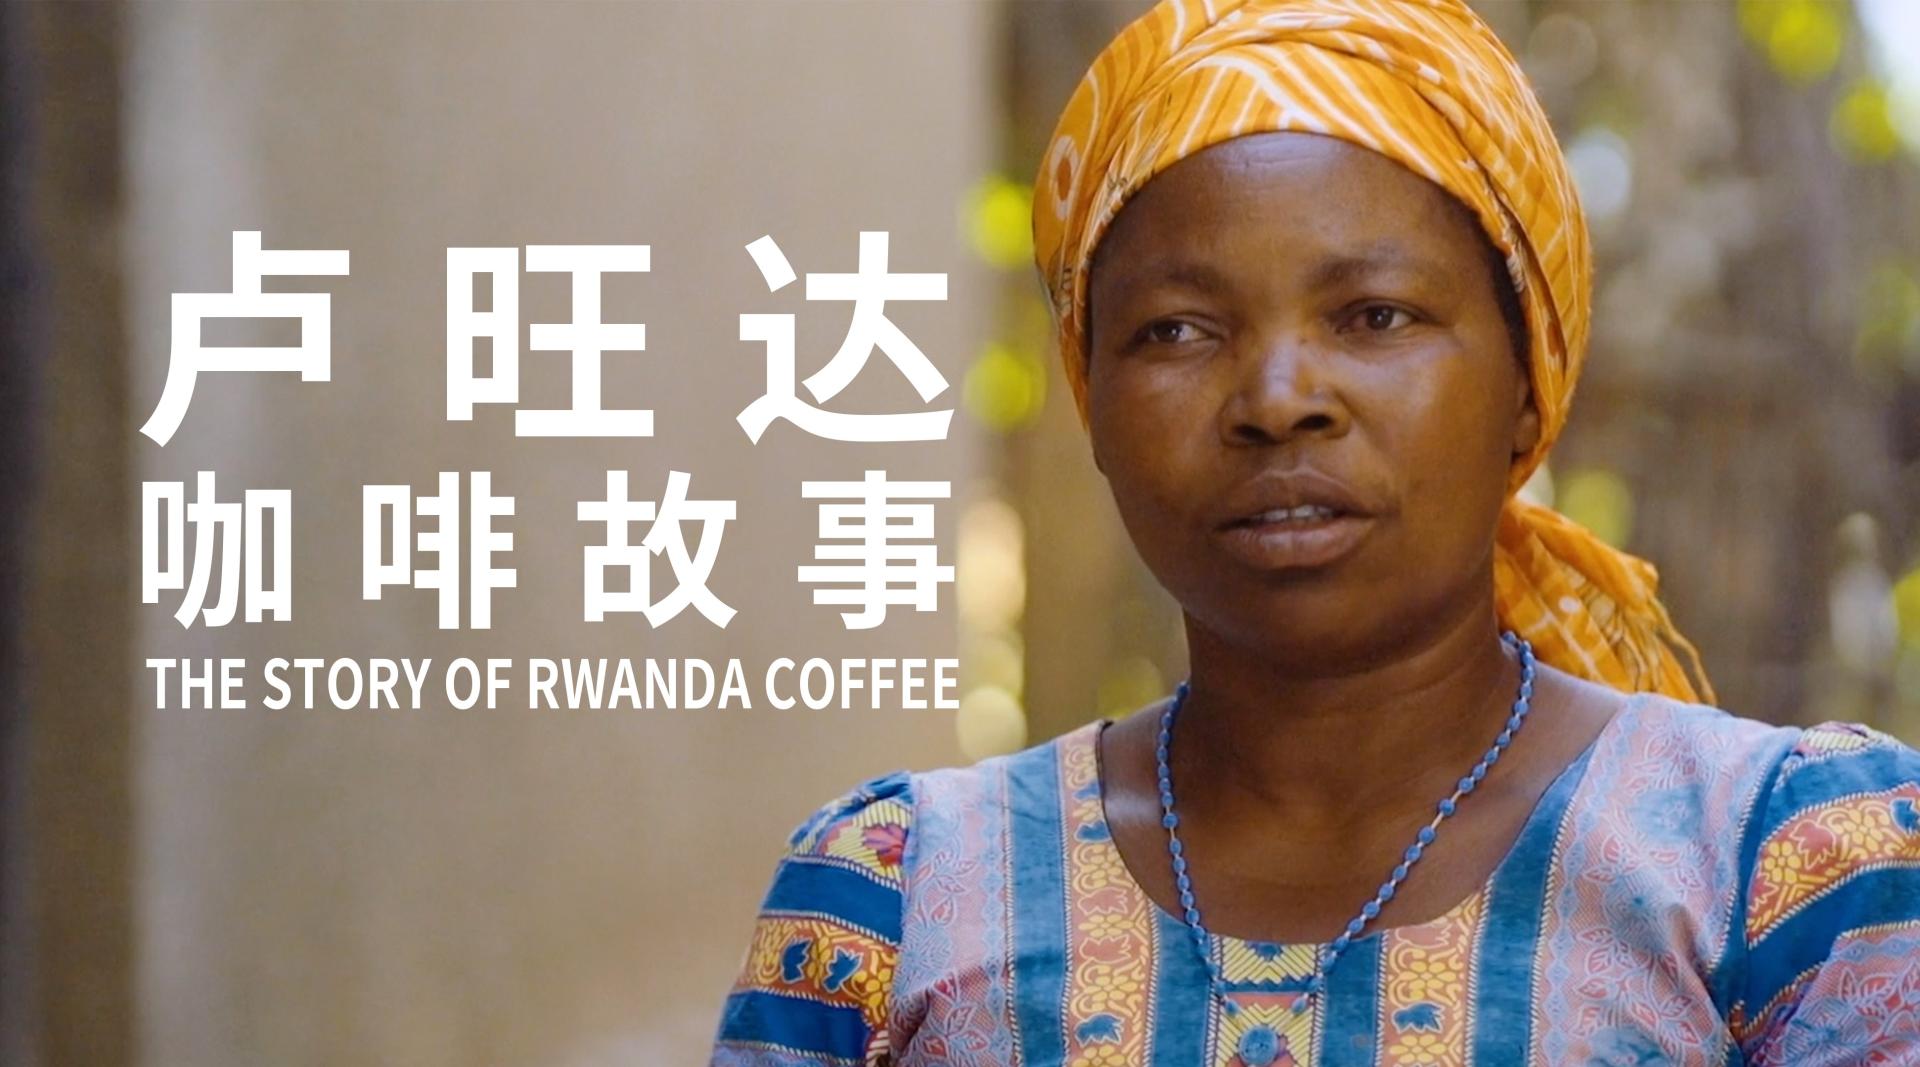 星巴克纪录片《卢旺达咖啡故事》